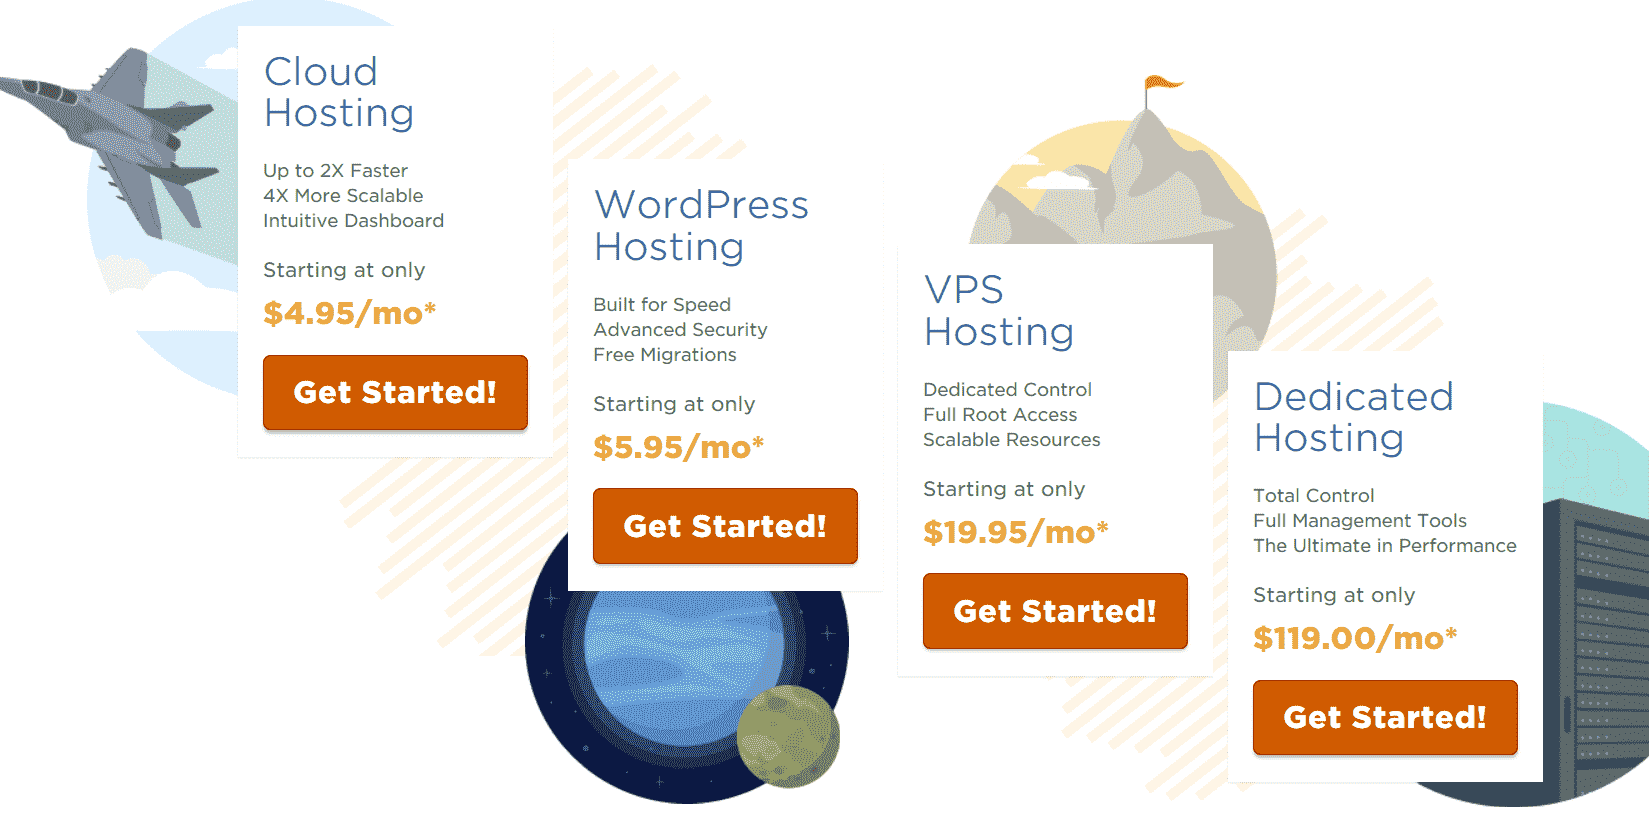 Hostgator WordPress hosting